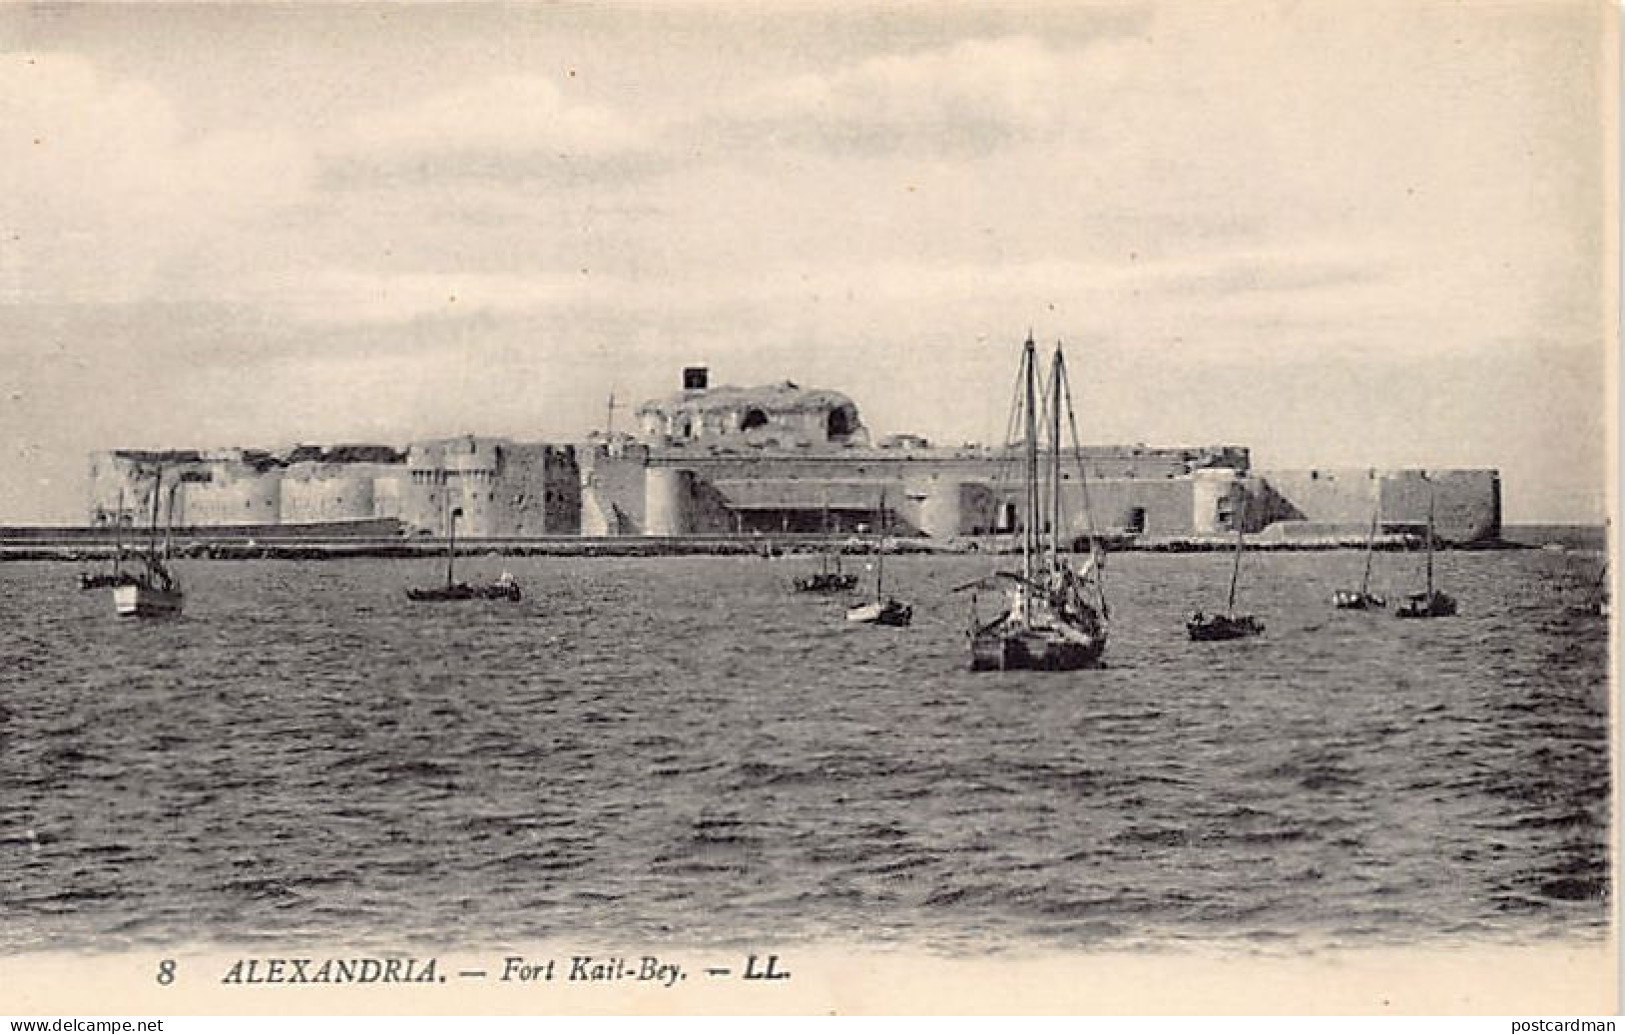 Egypt - ALEXANDRIA - Fort Qaitbay - Publ. L.L. 8 - Alexandrië